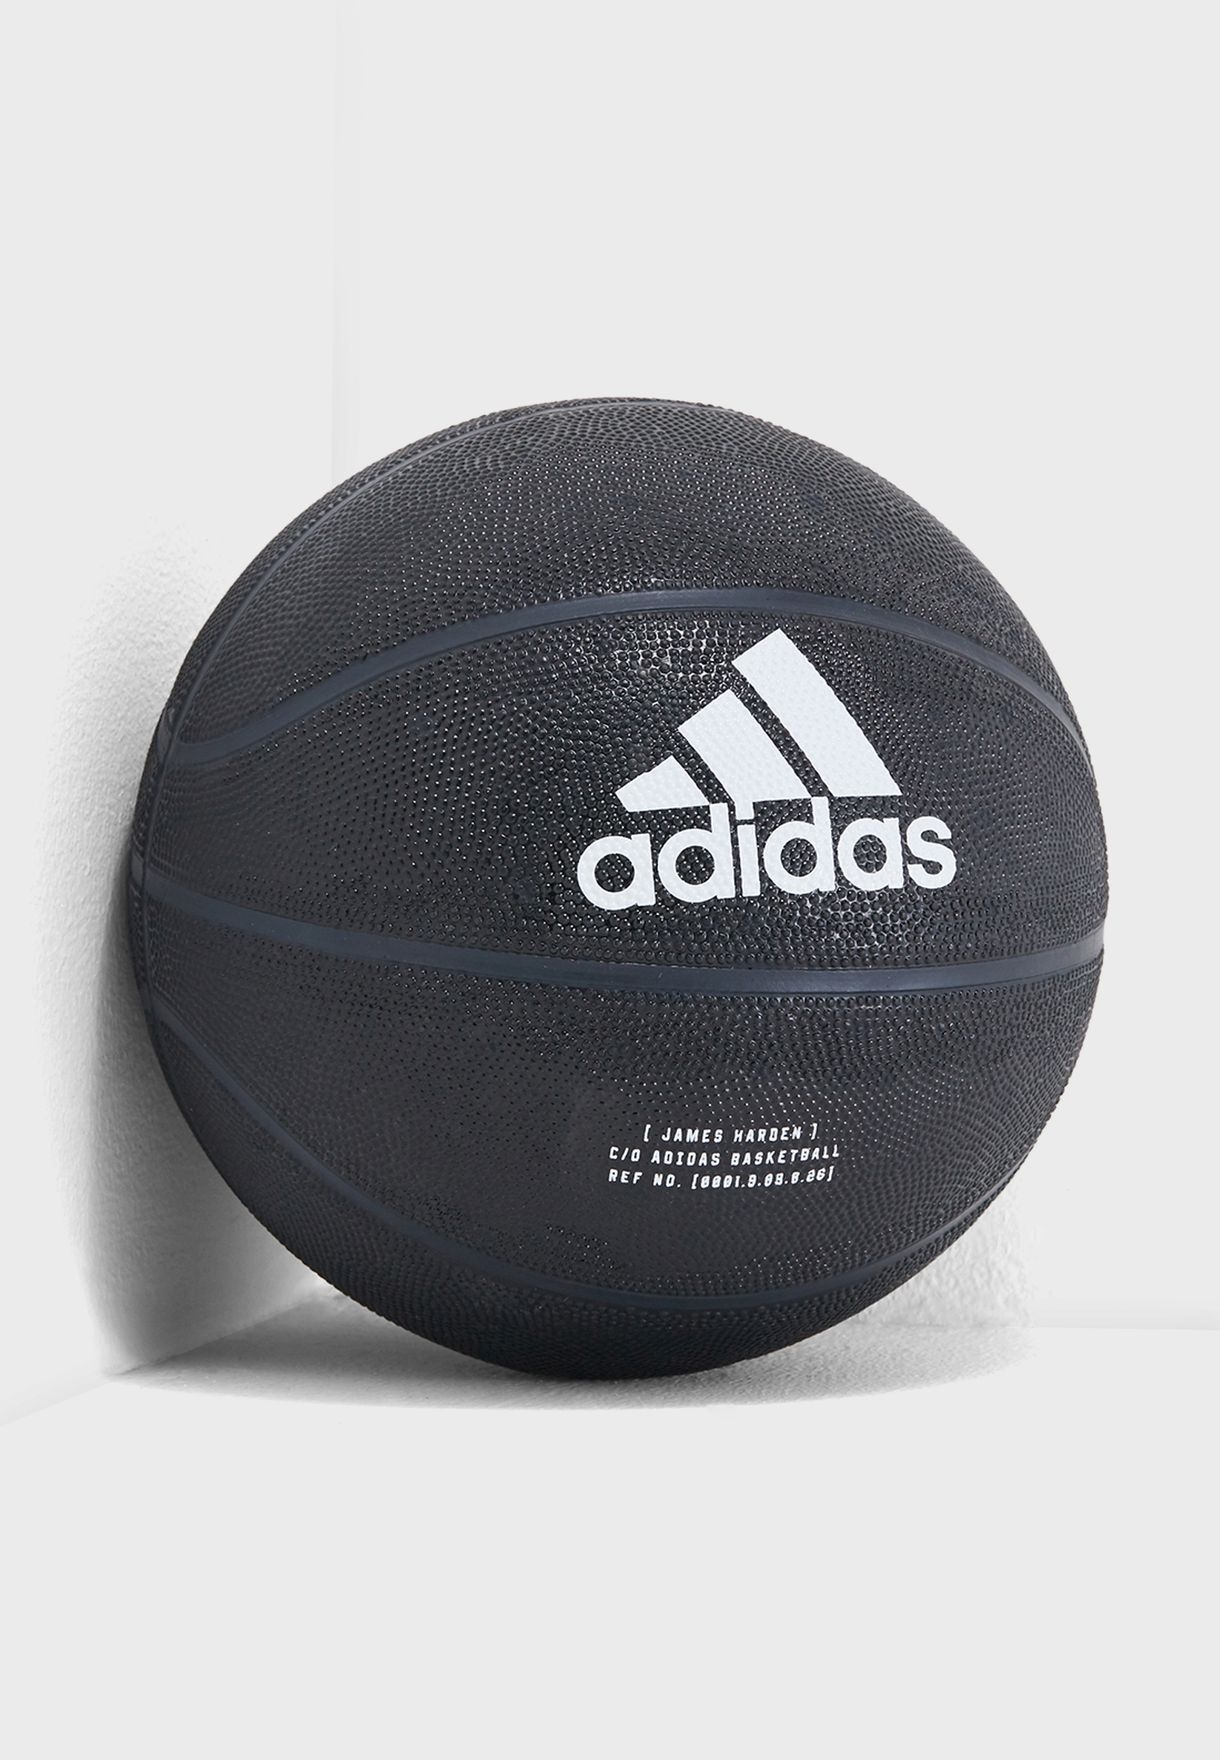 adidas black basketball